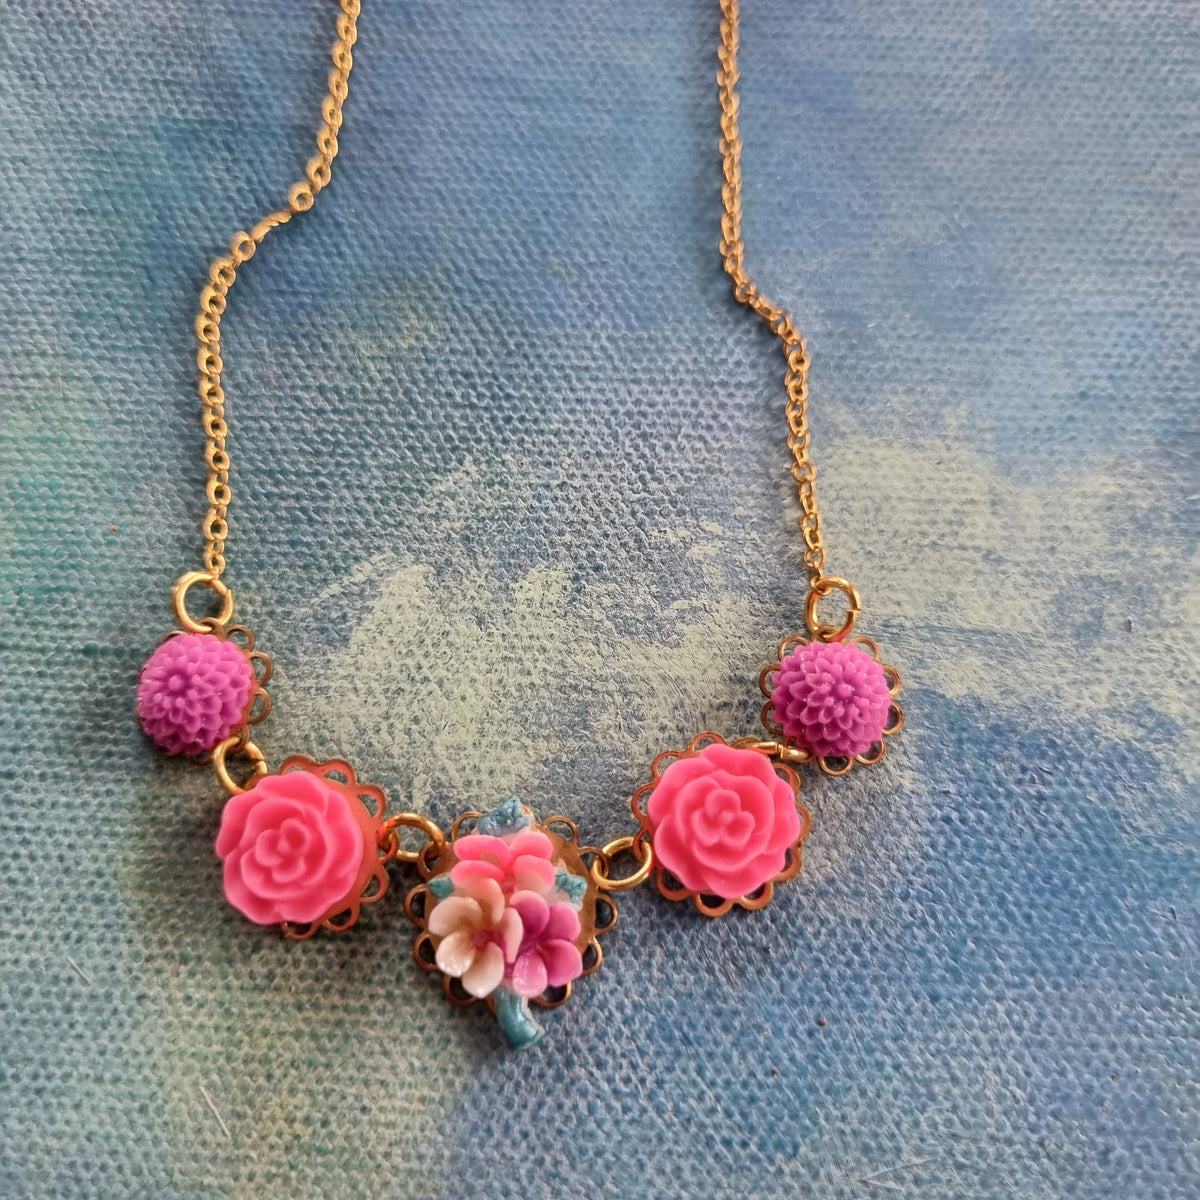 Lille halskæde #4 - Hårpynt med blomster og perler til bryllup, konfirmation og fest